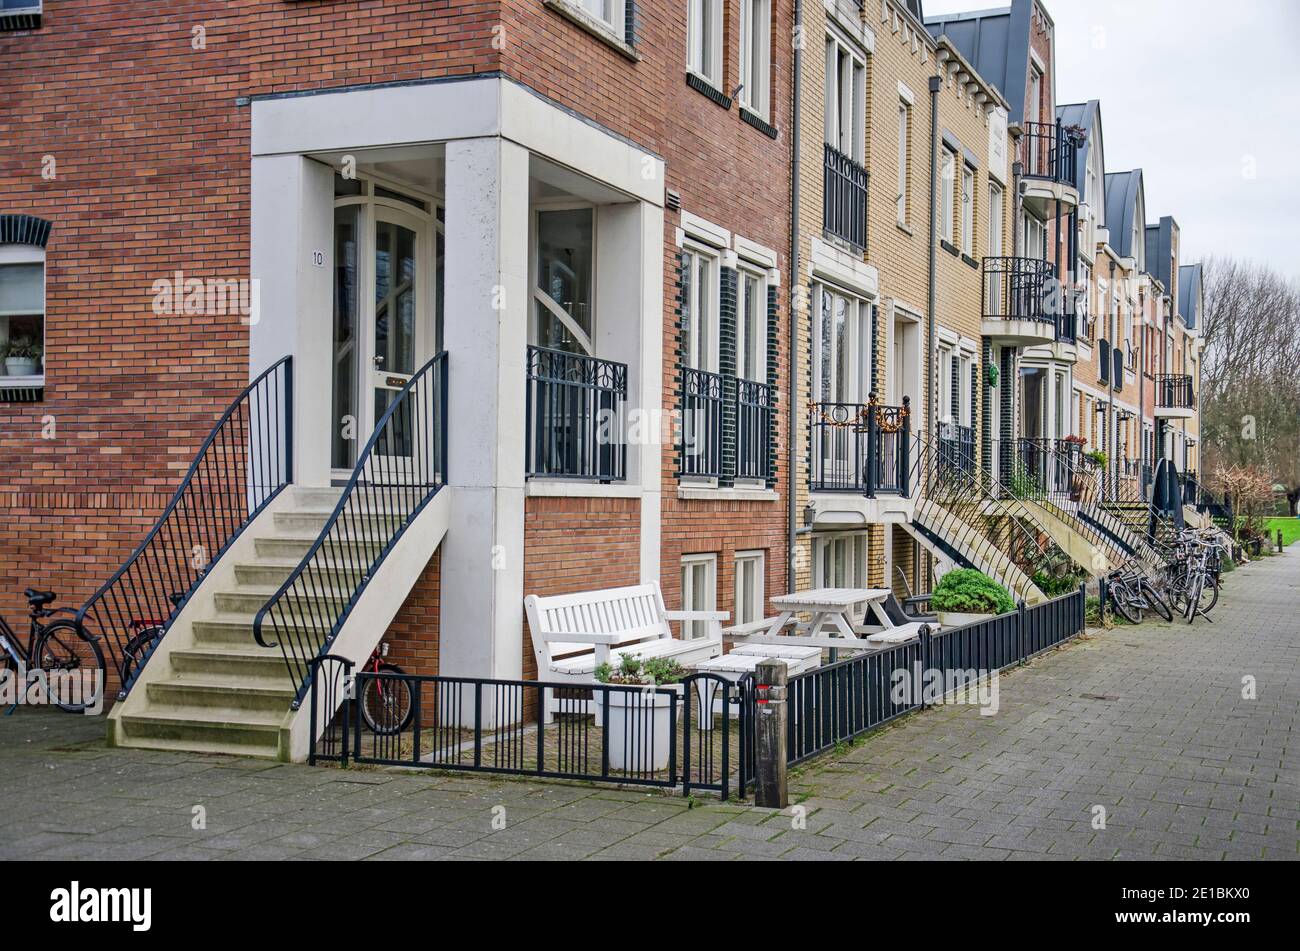 Voorschoten, pays-Bas, 3 janvier 2021 : rangée de maisons de ville dans le quartier de Krimwijk avec façades de briques dans un style post-moderne avec jugenstil in Banque D'Images